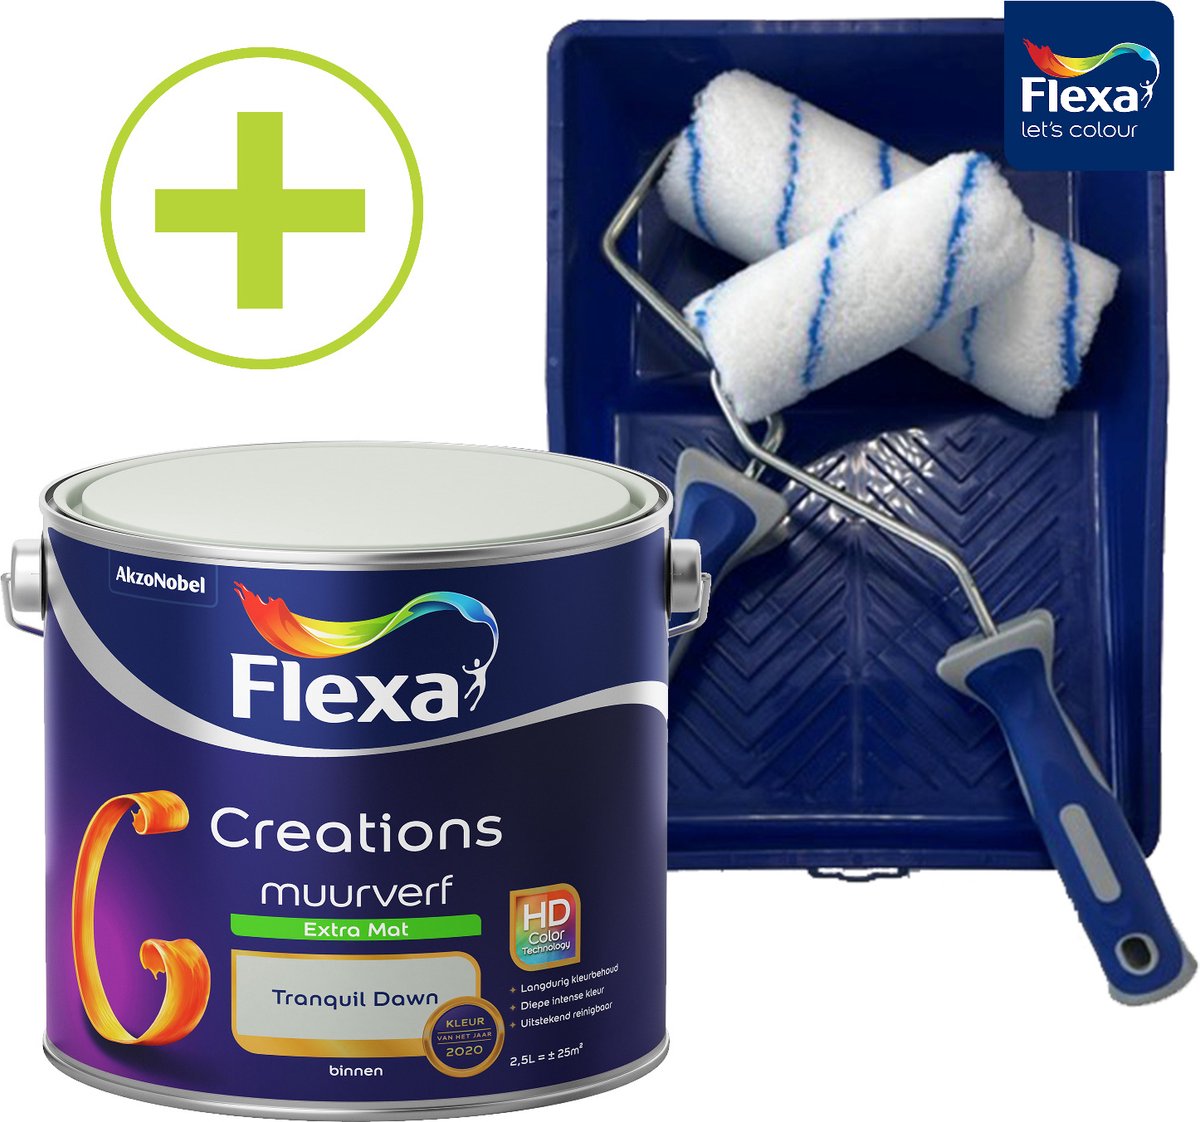 Flexa Creations - Muurverf - Extra Mat - Tranquil Dawn - Groen - 2.5 l + Flexa Muurverfset 5-delig